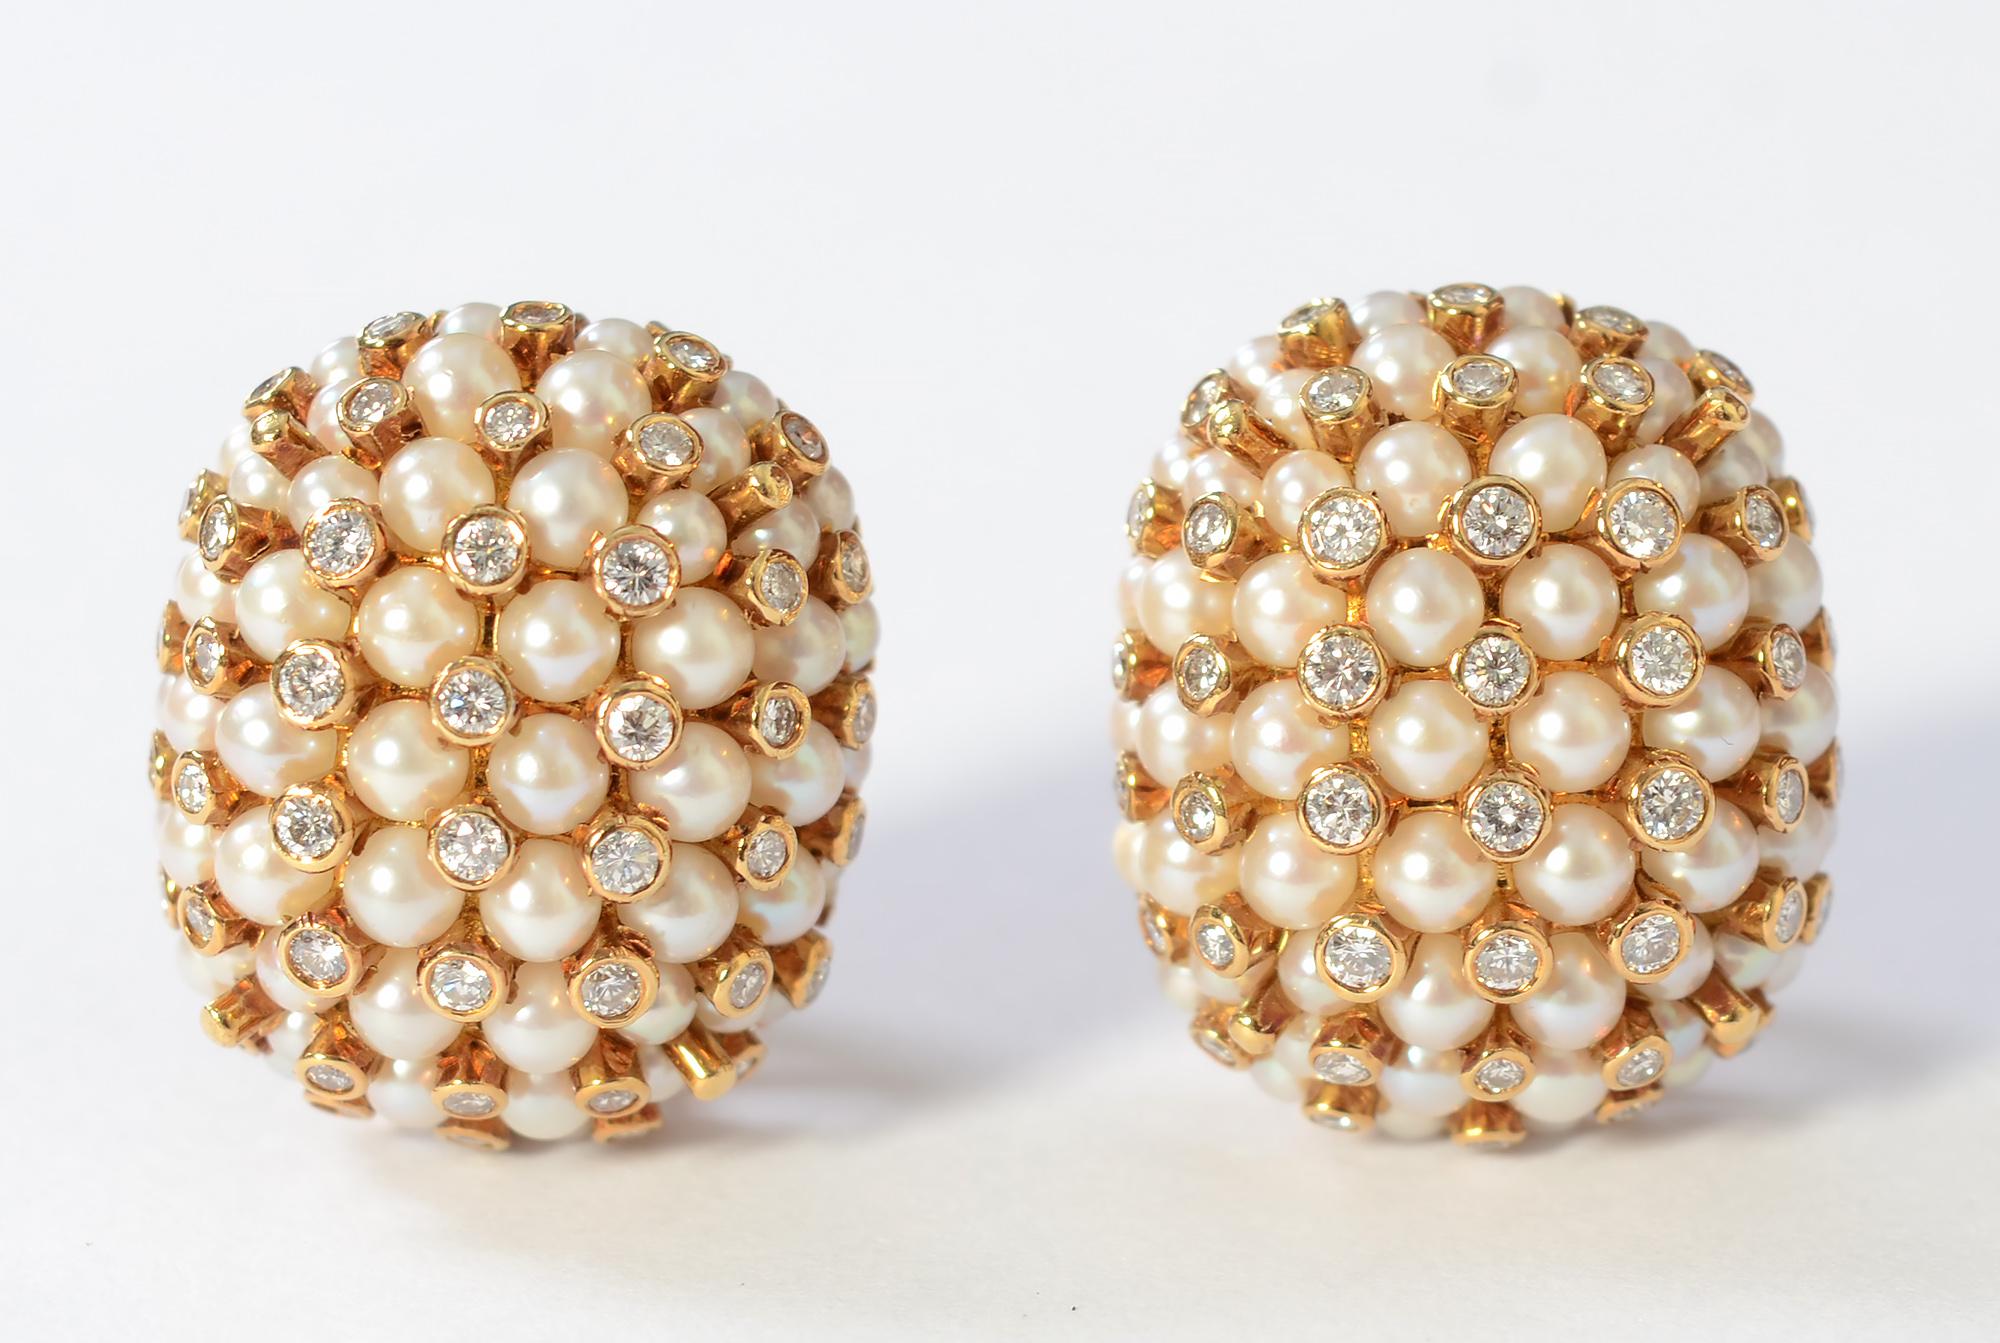 Boucles d'oreilles chic en perles parsemées de diamants pour leur donner un bel éclat. Les boucles d'oreilles ont une largeur de 13/16